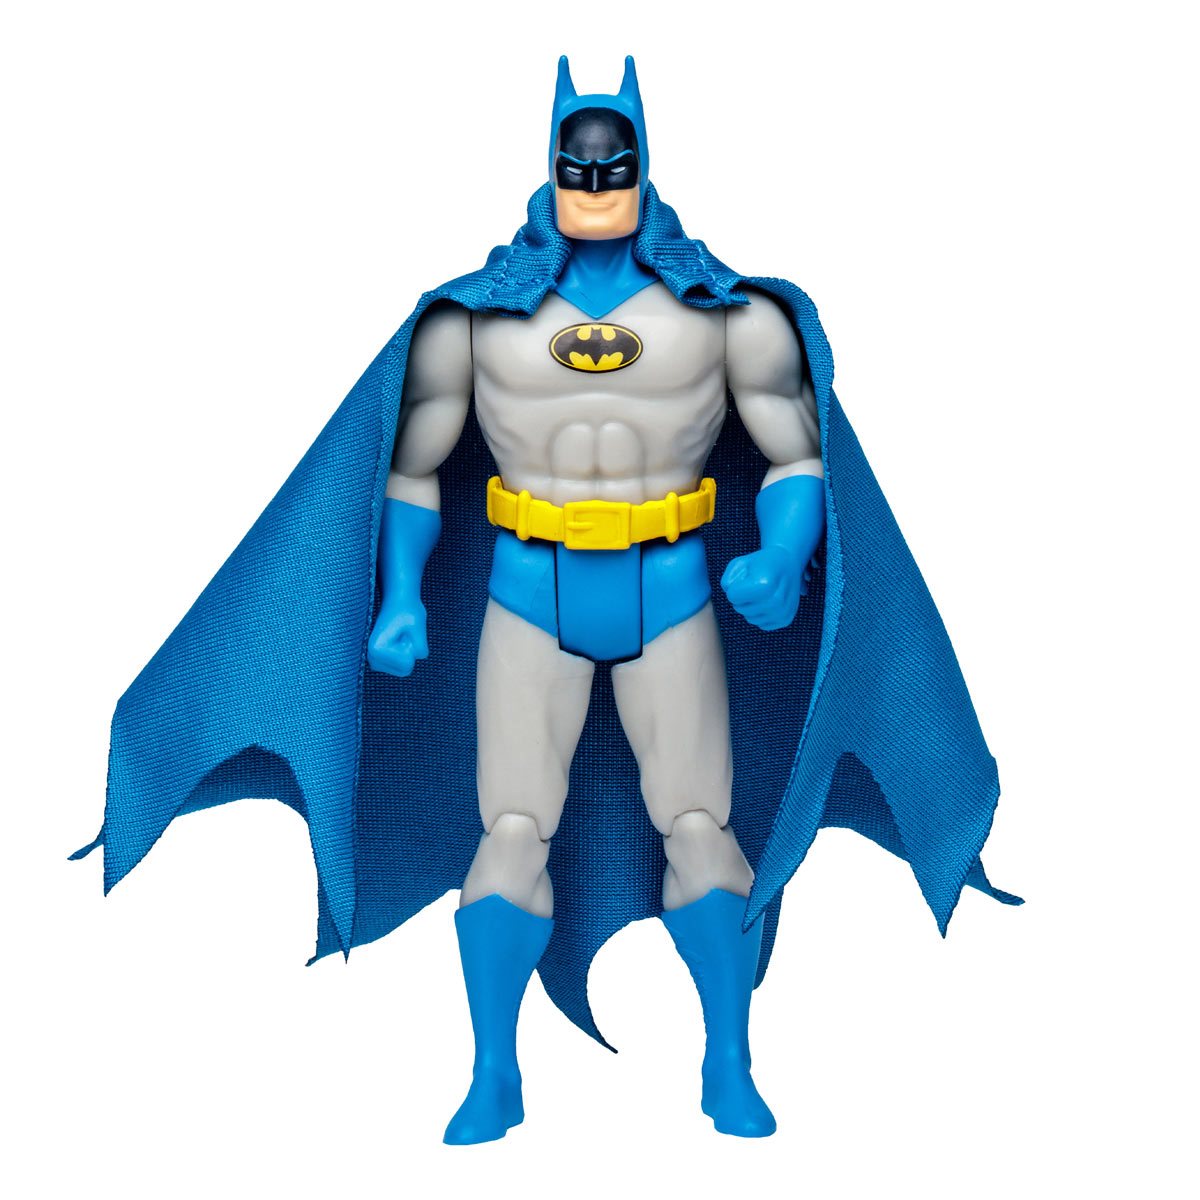 DC Super Powers Wave 4 Batman Classic Detective 4-Inch Scale Action Figure